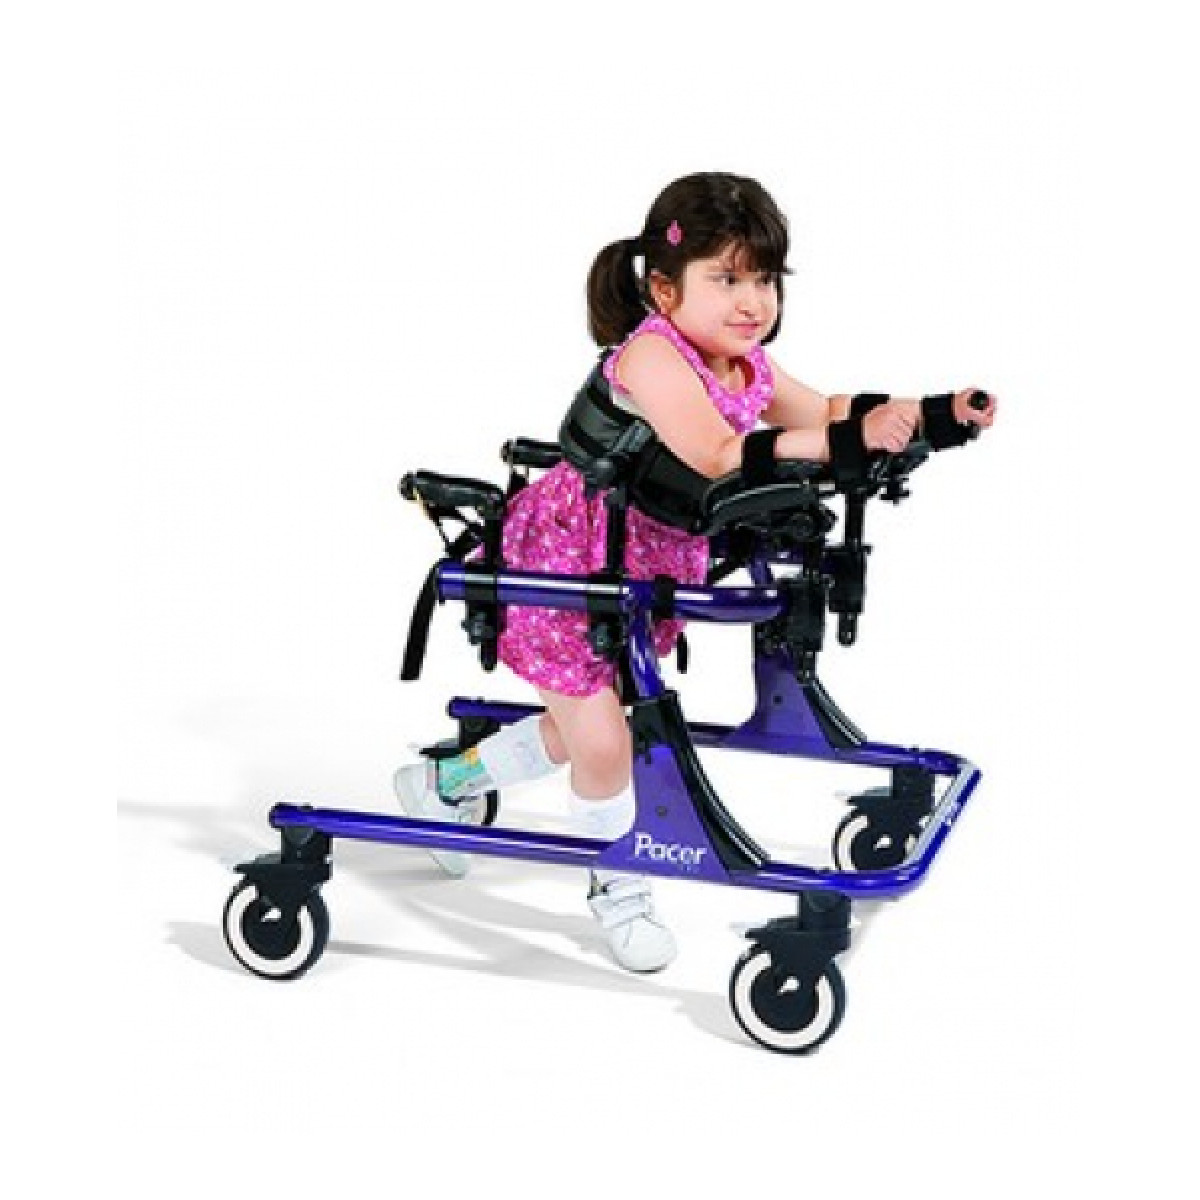 Средства дцп. Ходунки Рифтон для детей ДЦП. Rifton Pacer 501 ходунки. Ходунки для ДЦП Rifton. Ходунок ортопедический для ходьбы инвалидов Rifton Pacer k504.